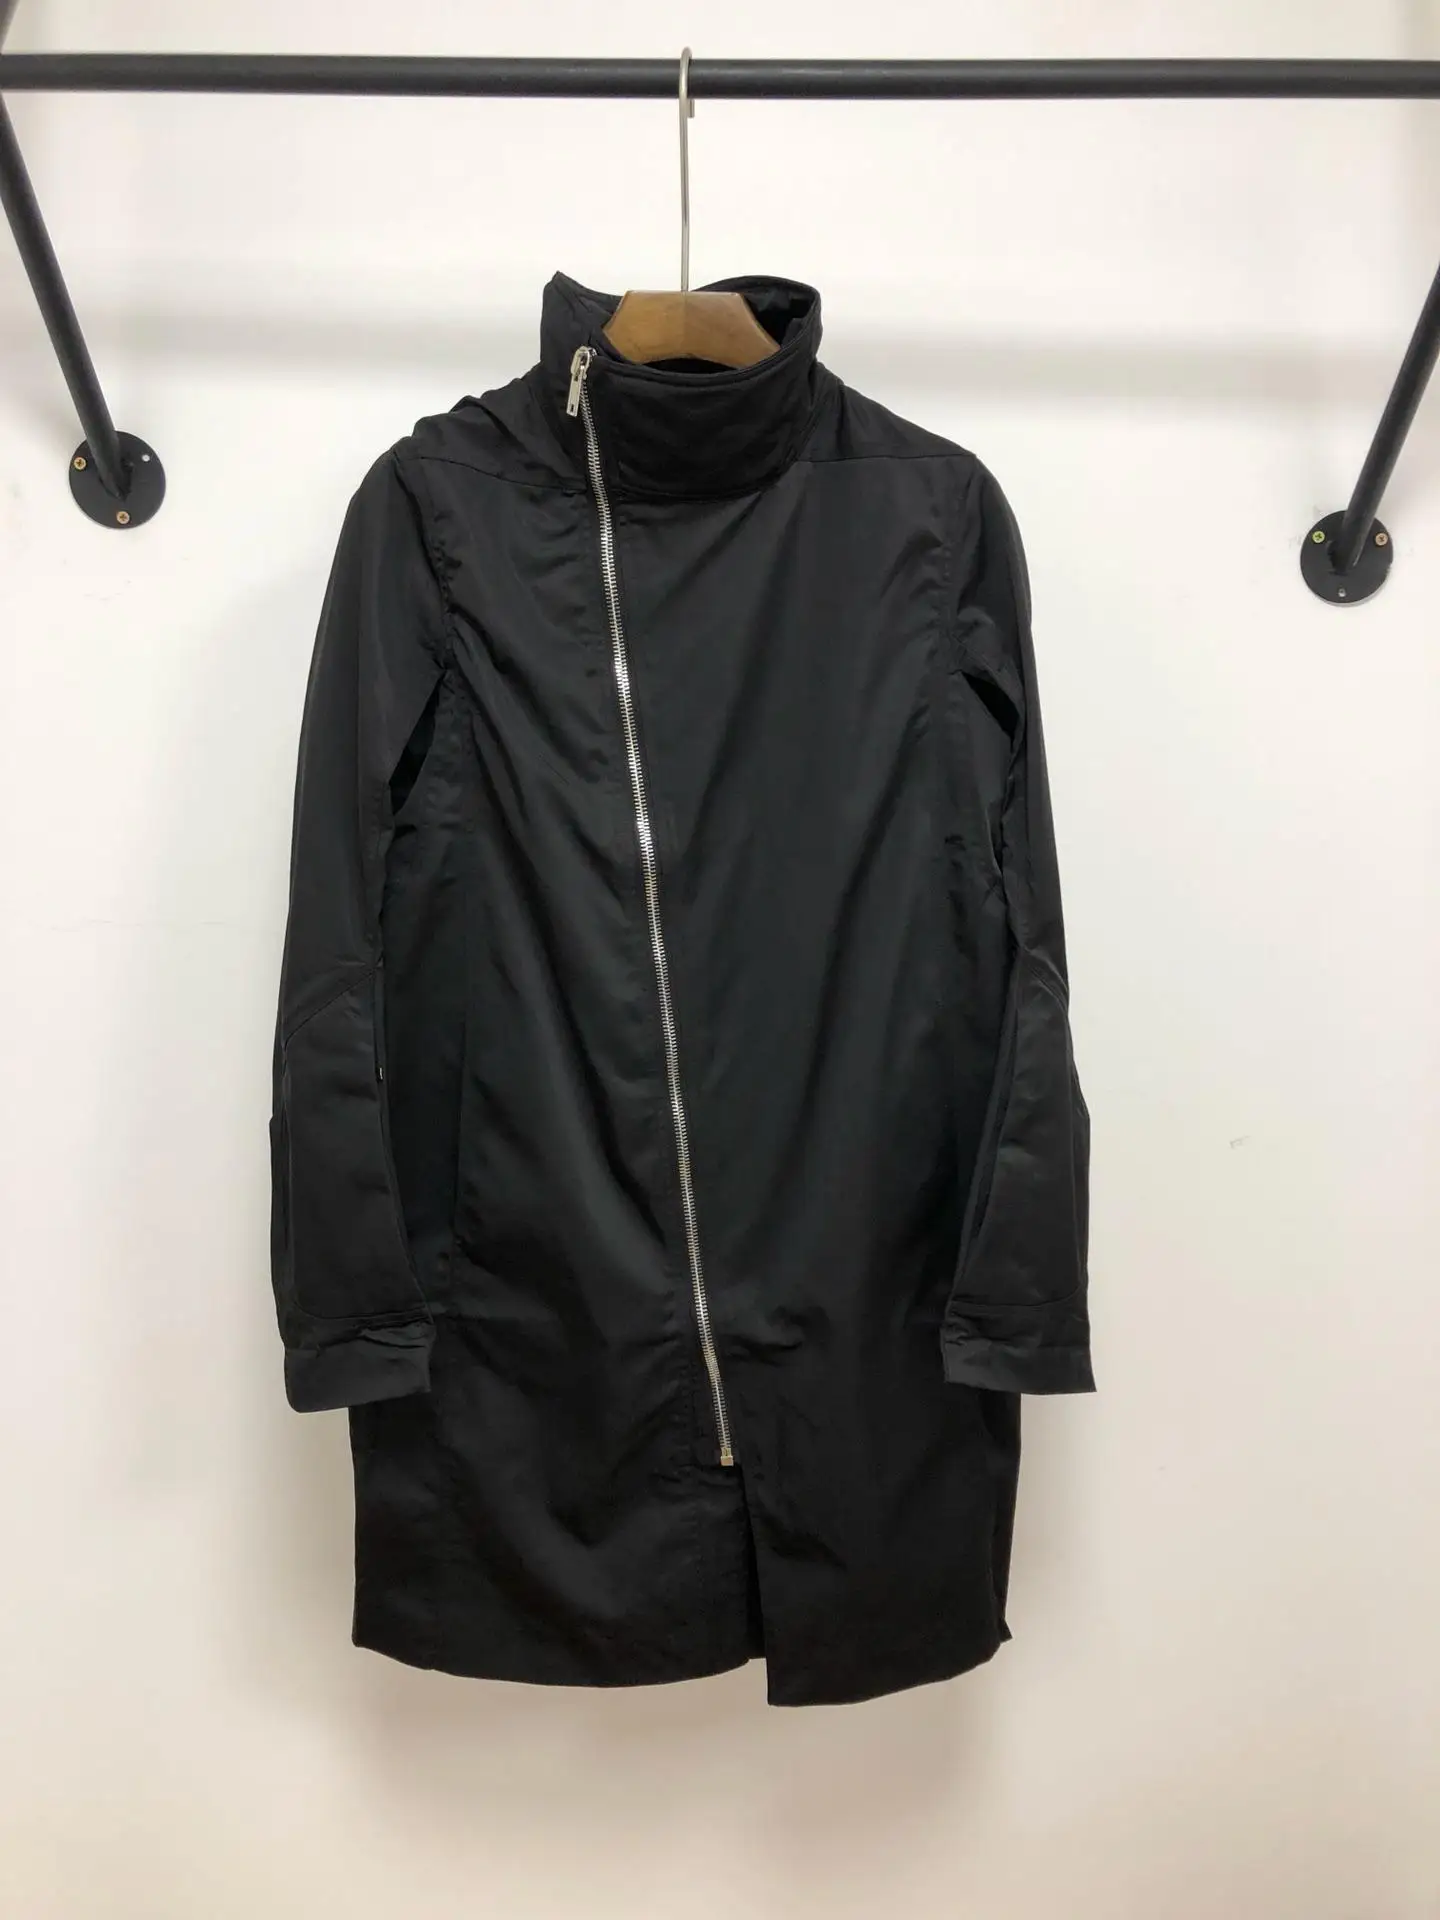 Owen seak мужские пальто куртки Готический стиль мужская одежда весенние женские пылезащитные пальто куртки ветровка черный размер XL - Цвет: Черный